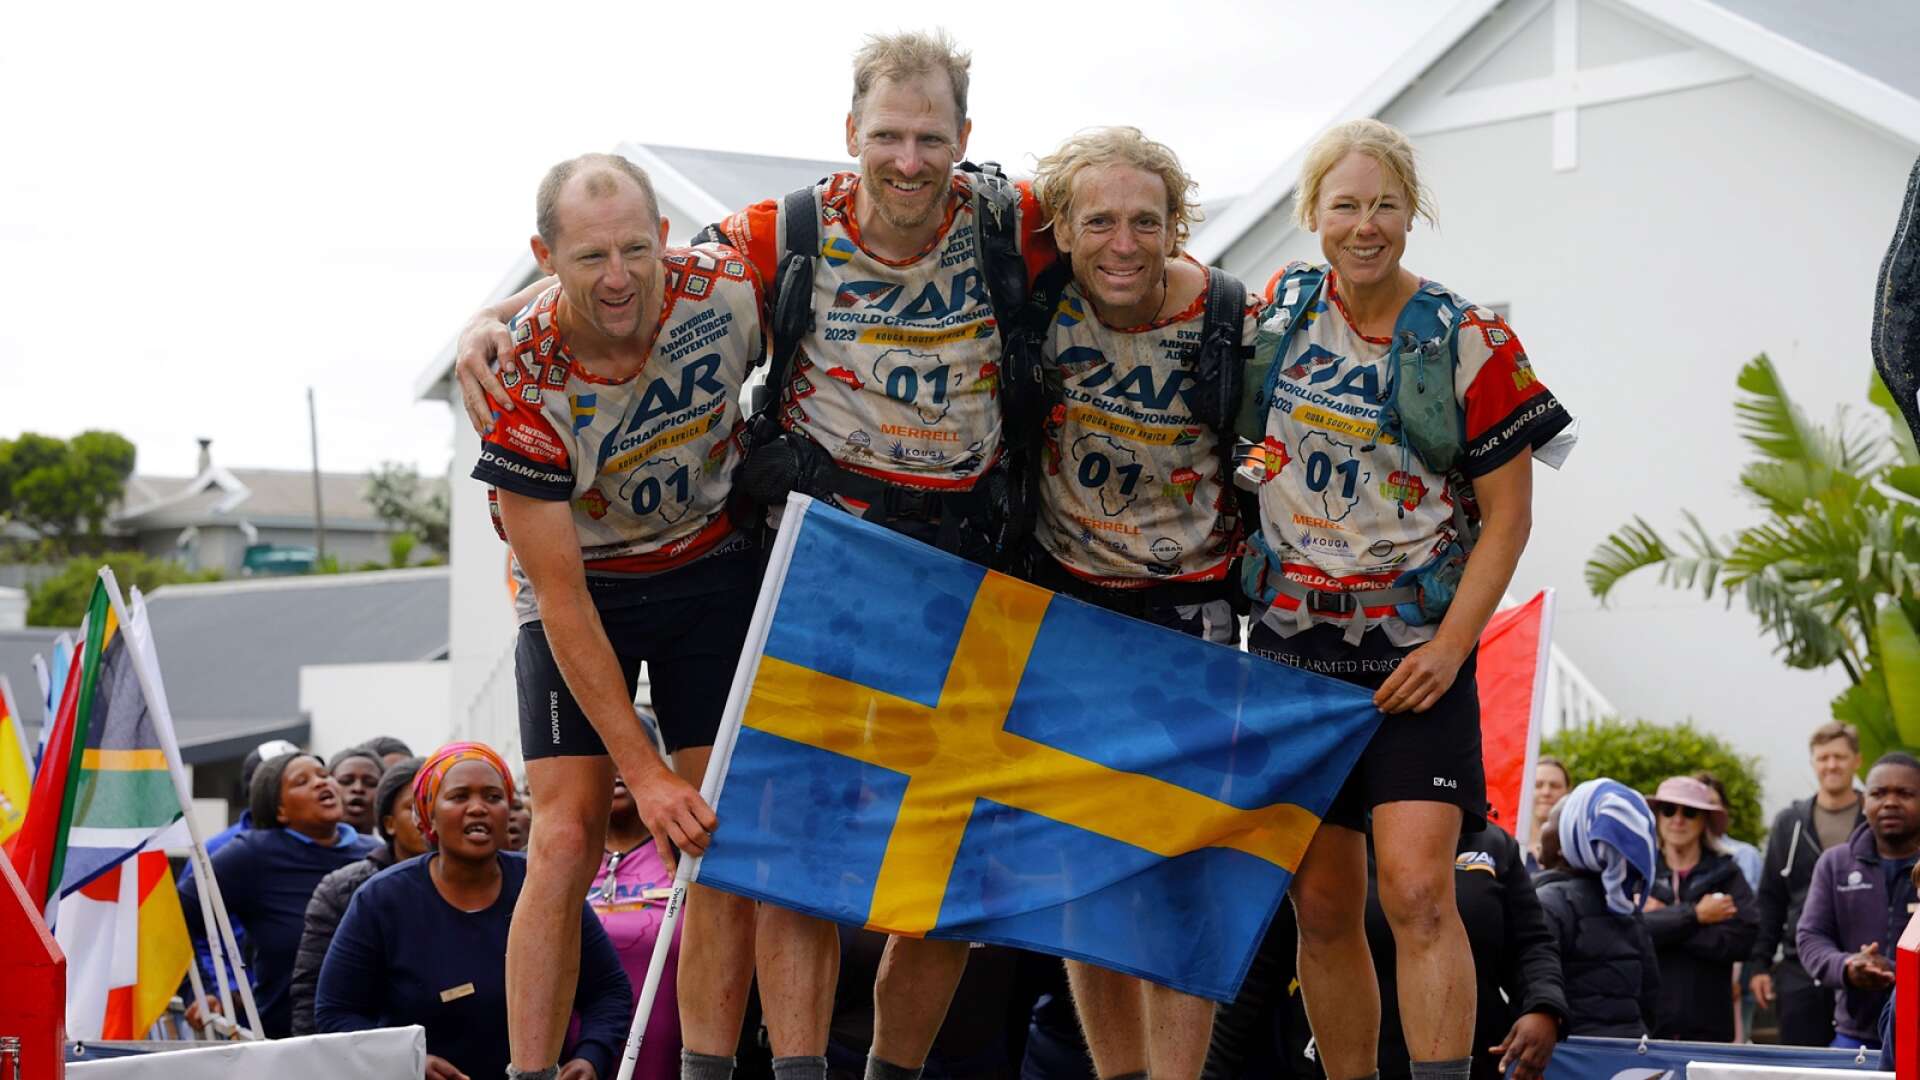 Svenska multisportlaget var lyckliga världsmästare när de gick över mållinjen i Sydafrika. I laget ingår Per Vestling från Falun, John Karlsson från Hjo, Oskar Svärd från Eksjö och Malin Hjalmarsson från Märsta.